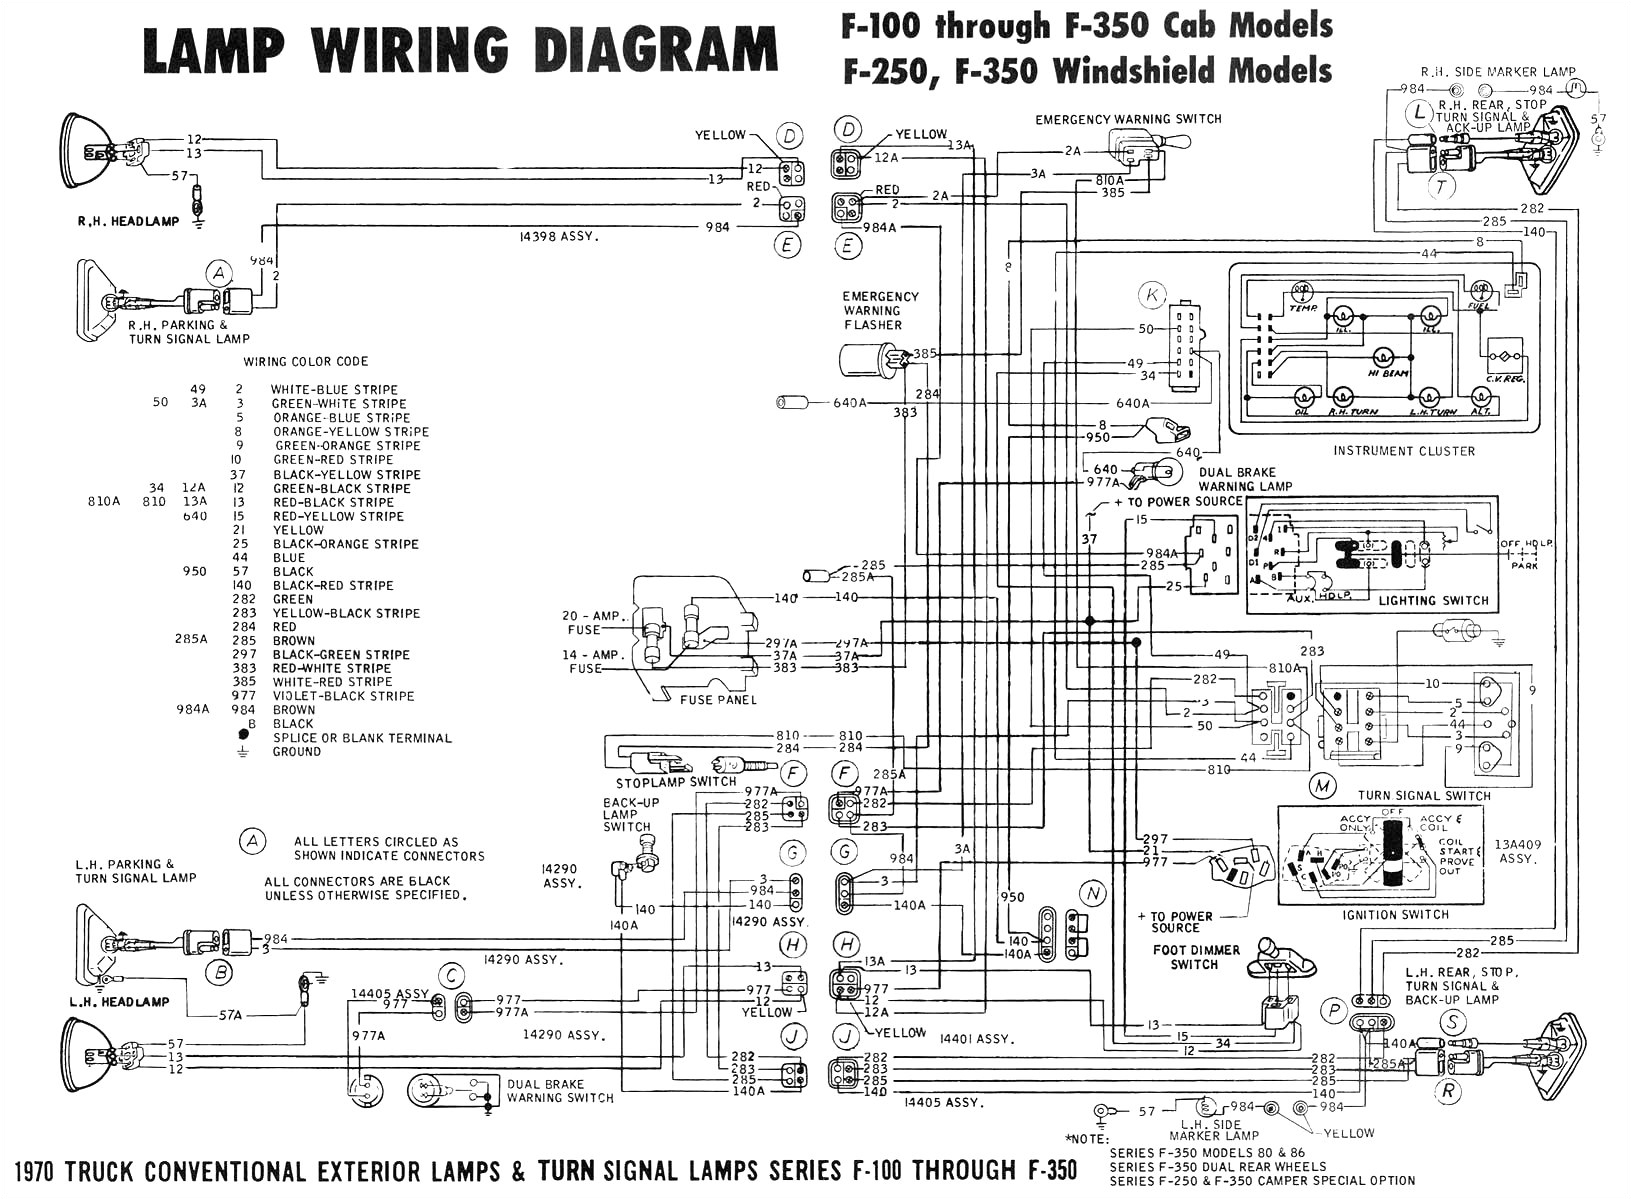 com forum o view topic power transformer wiring help please wiring com forum o view topic power transformer wiring help please